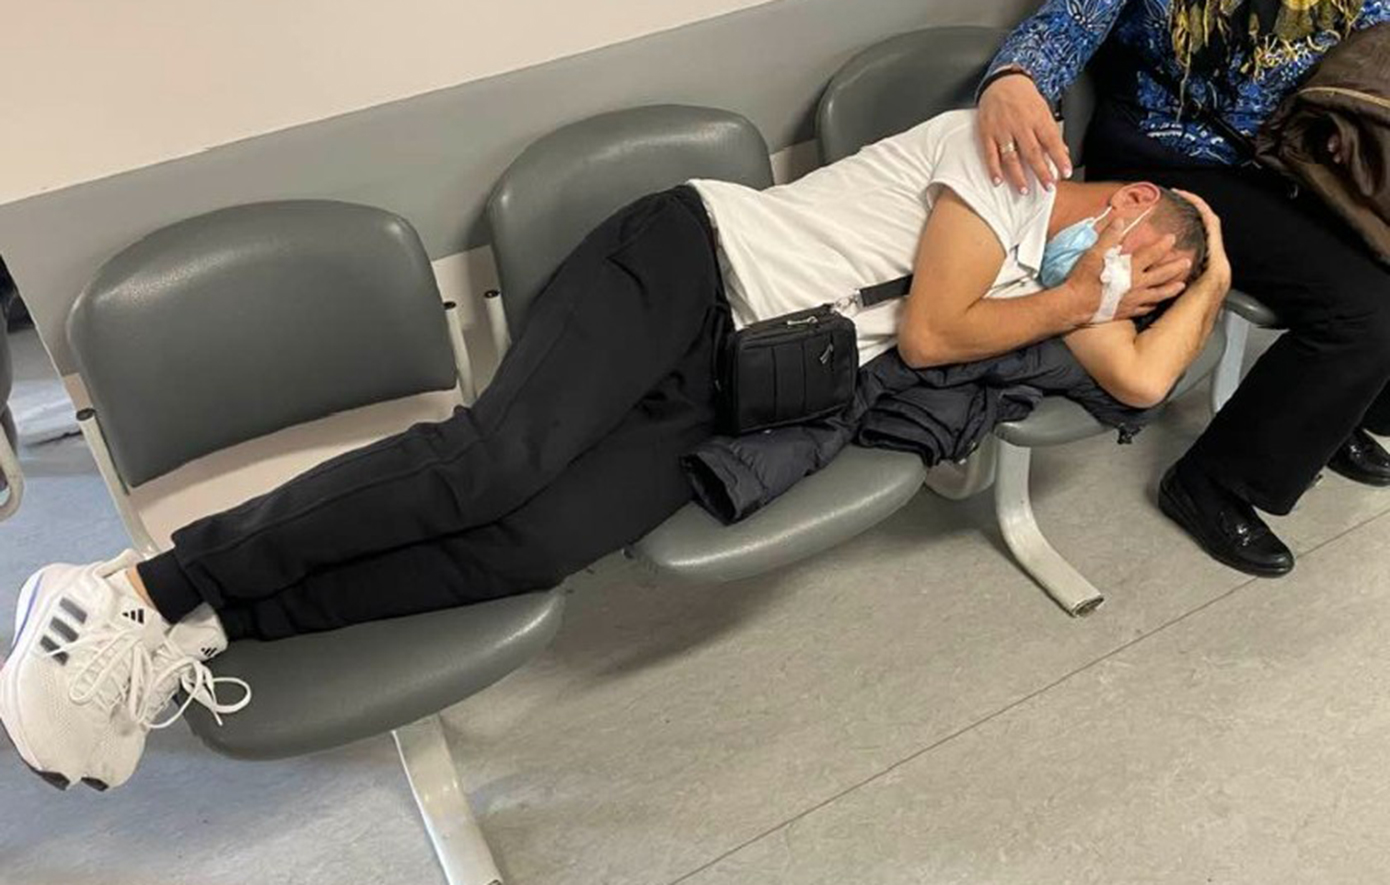 Θεσσαλονίκη: ΕΔΕ για την ανάνηψη ασθενούς σε καρέκλες αναμονής στο Θεαγένειο